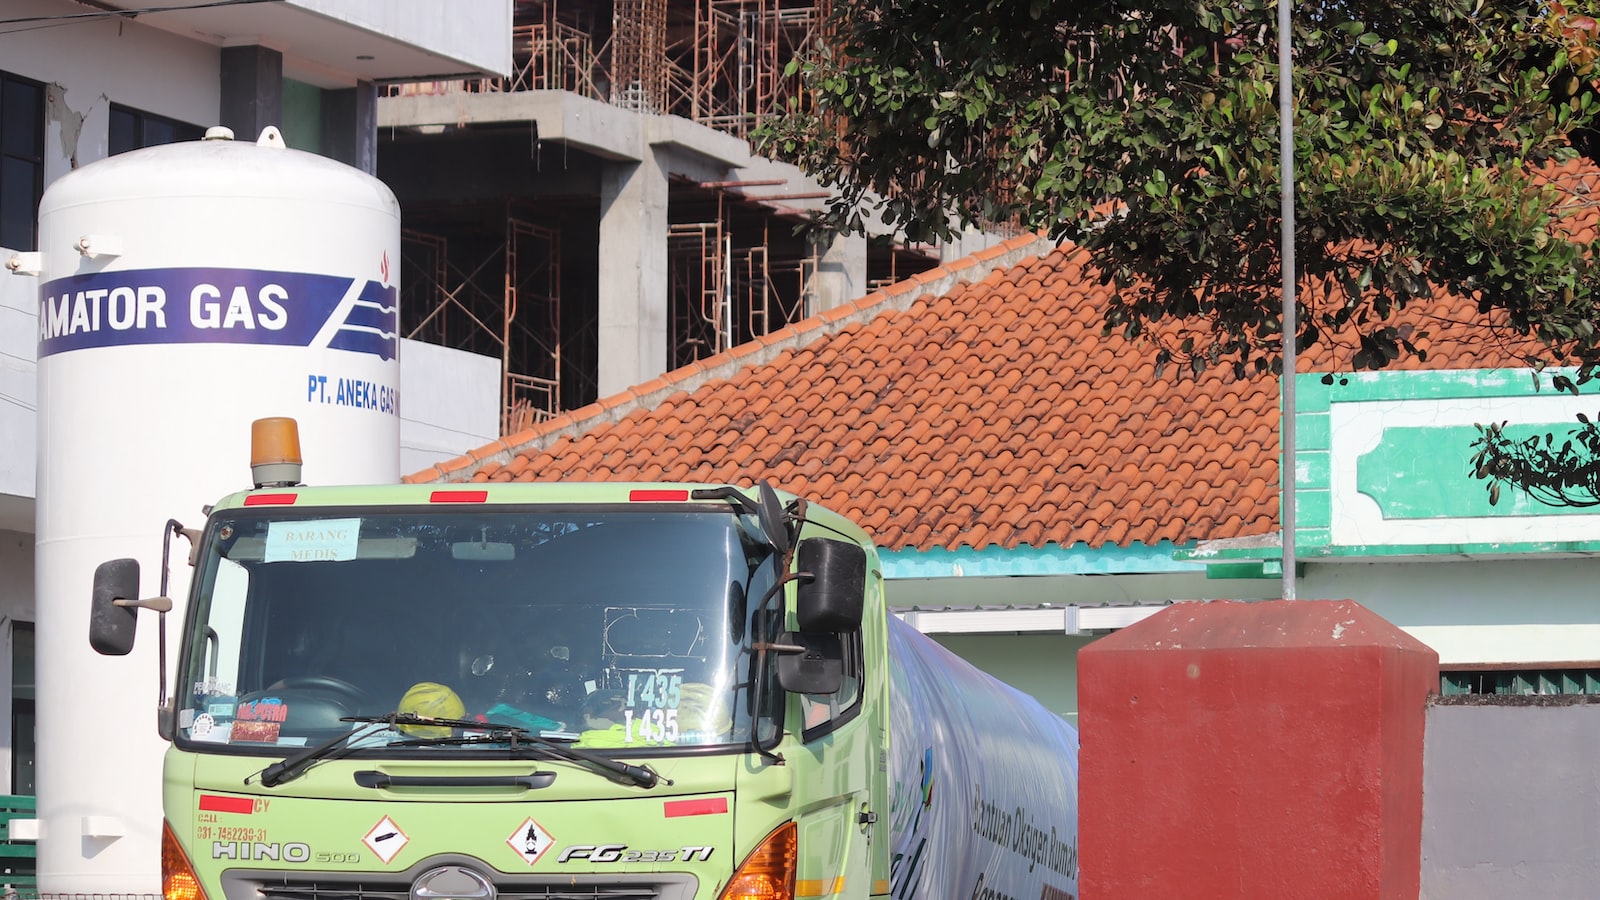 Ketahui Harga Asuransi Mobil: Ragam Opsi di Bandung